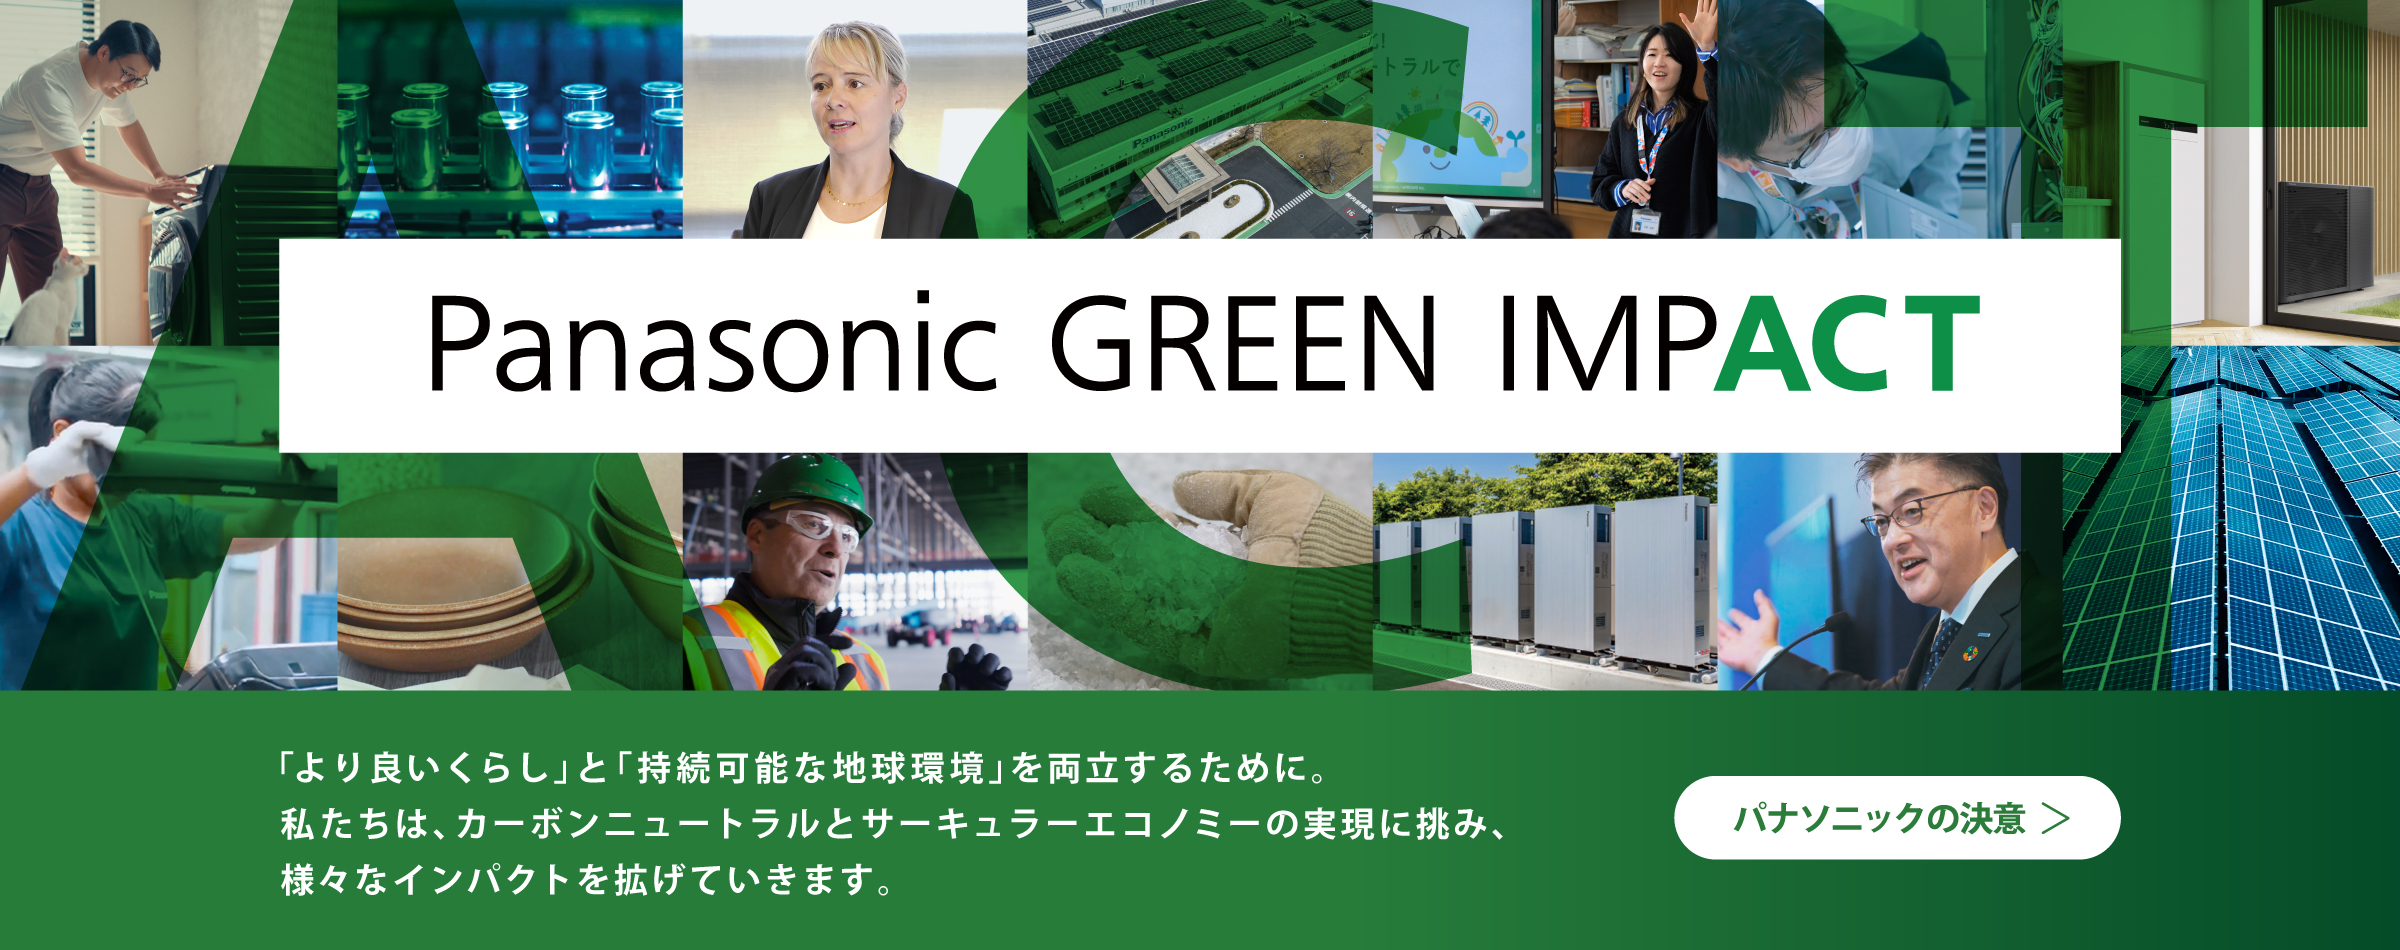 Panasonic GREEN IMPACT 「より良いくらし」と 「持続可能な地球環境」を両立するために。 私たちは、カーボンニュートラルと サーキュラーエコノミーの実現に挑み、様々なインパクトを拡げていきます。 パナソニックの決意​